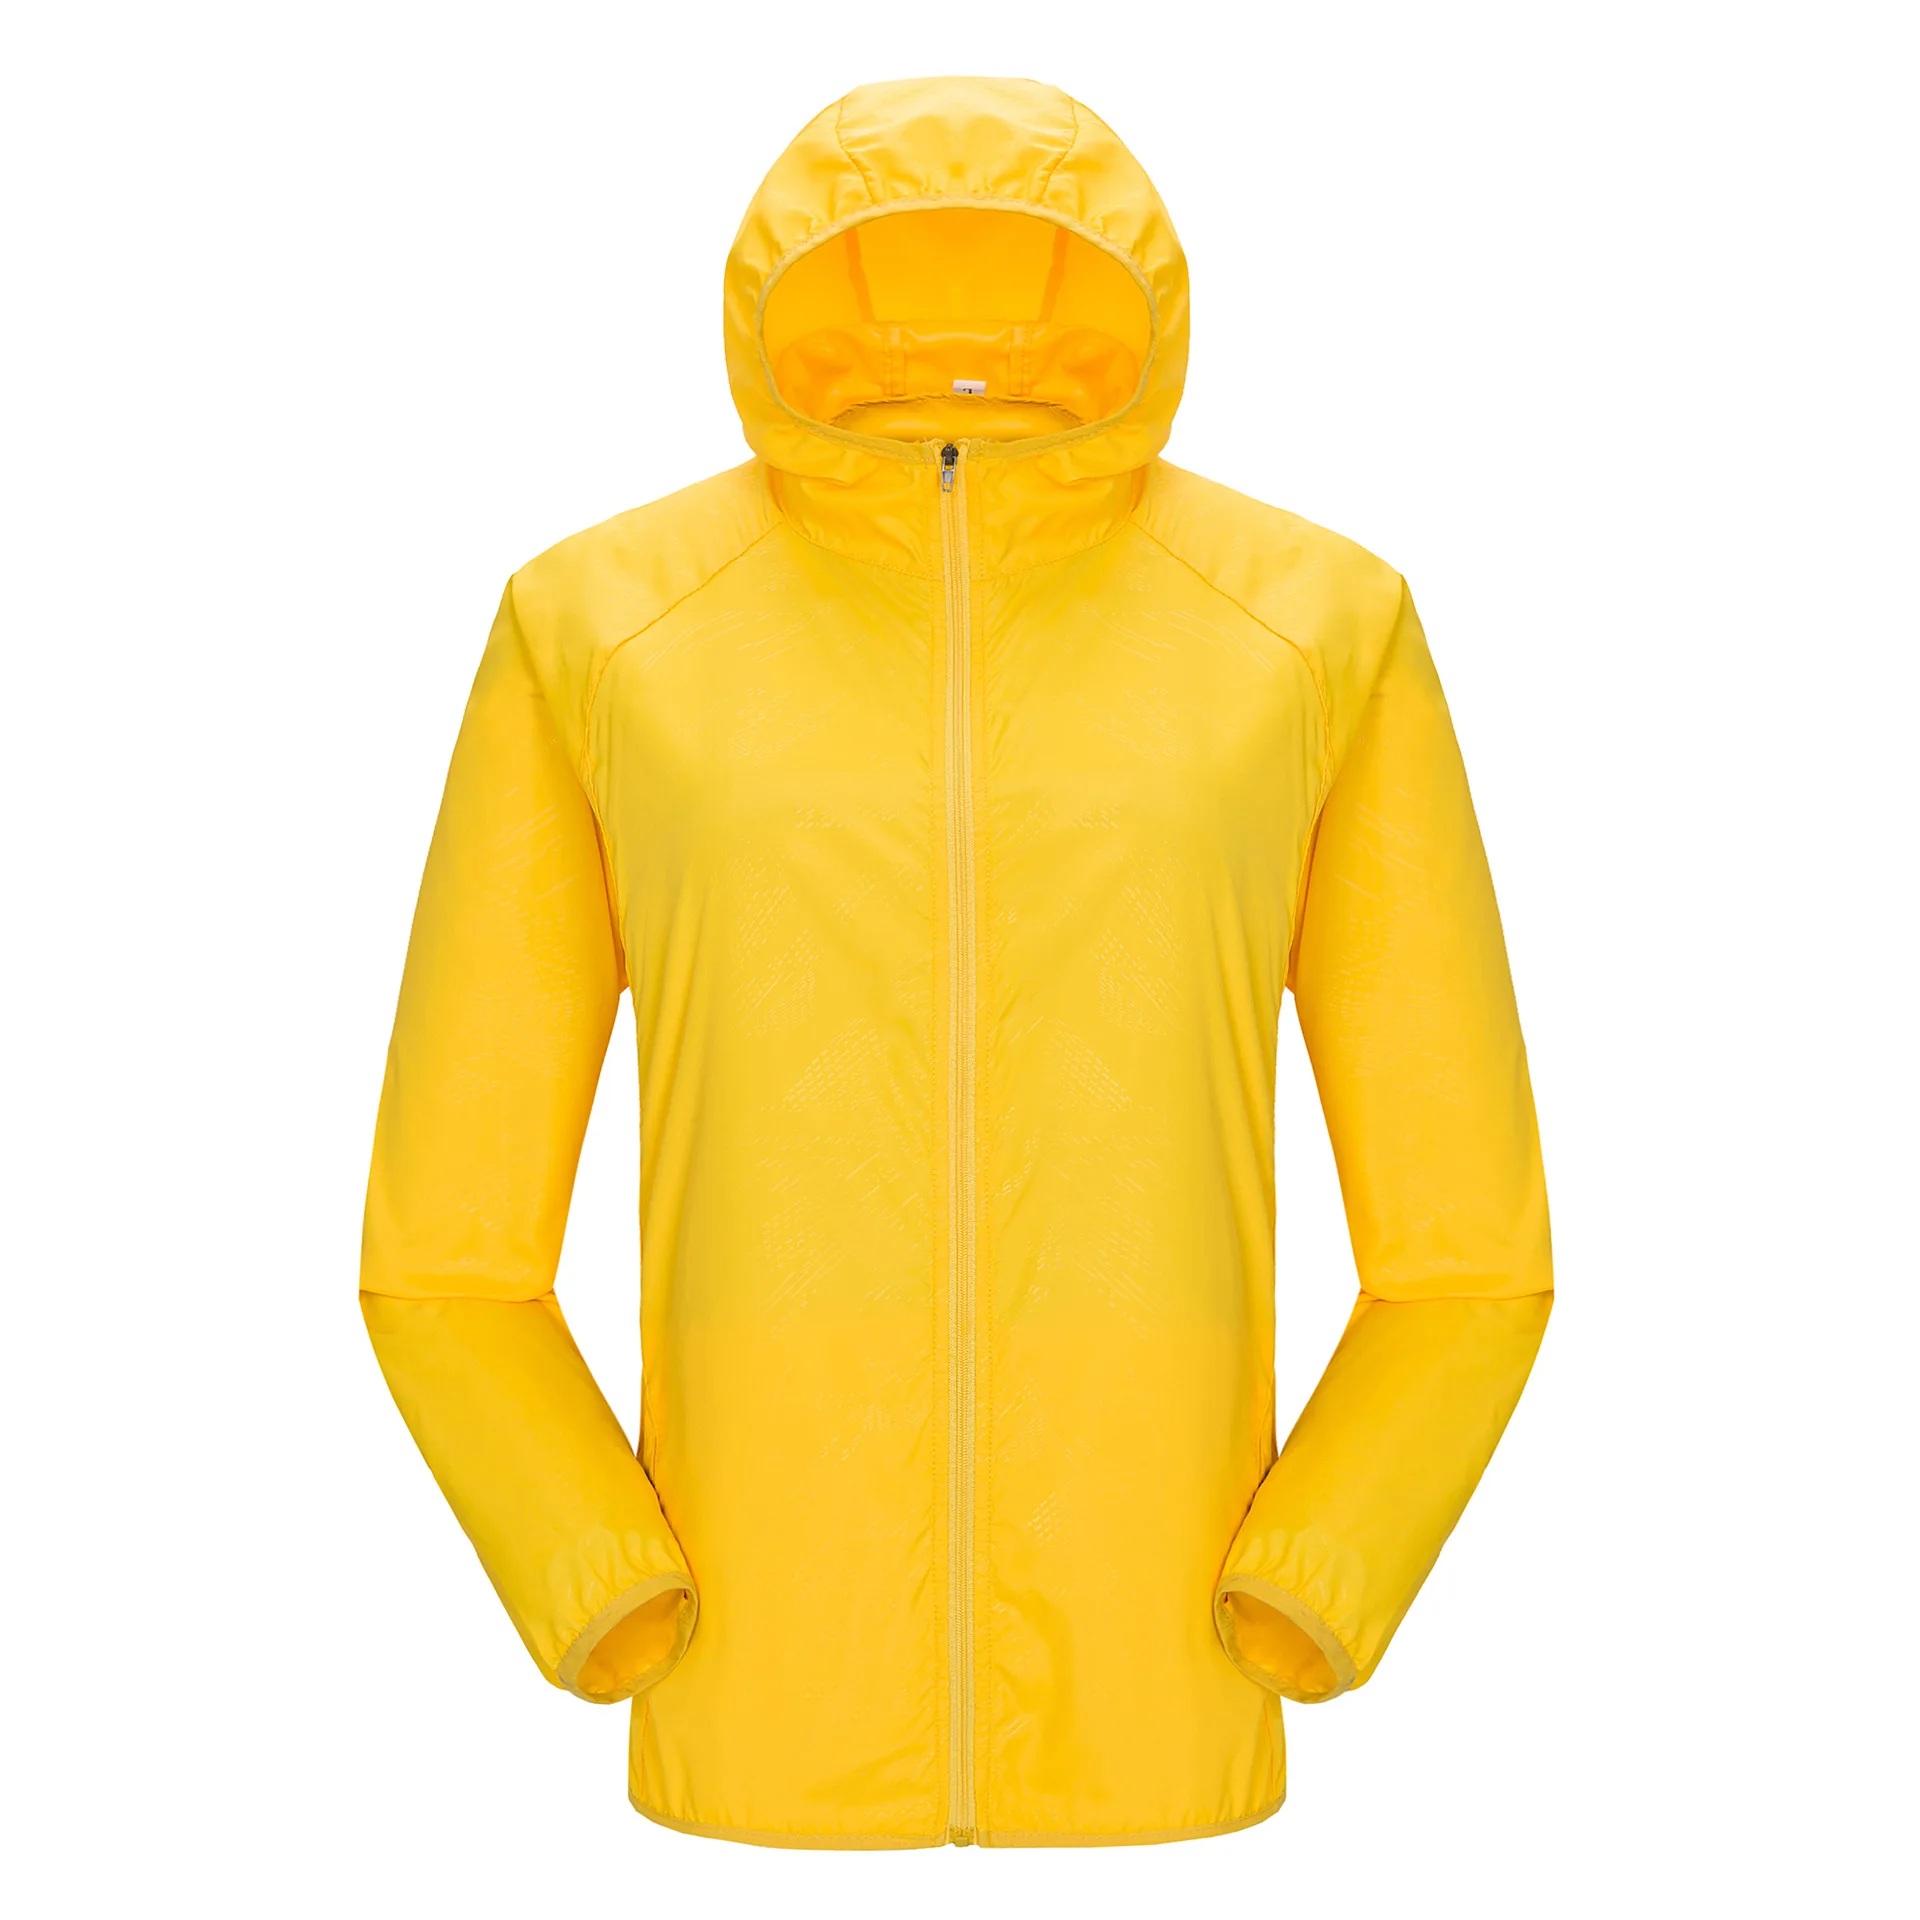 Горячее предложение, Солнцезащитная штормовка для мужчин и женщин, ветрозащитная штормовка Veste Thermique MTB для велоспорта, плащ с капюшоном, спортивные куртки для бега - Цвет: Цвет: желтый